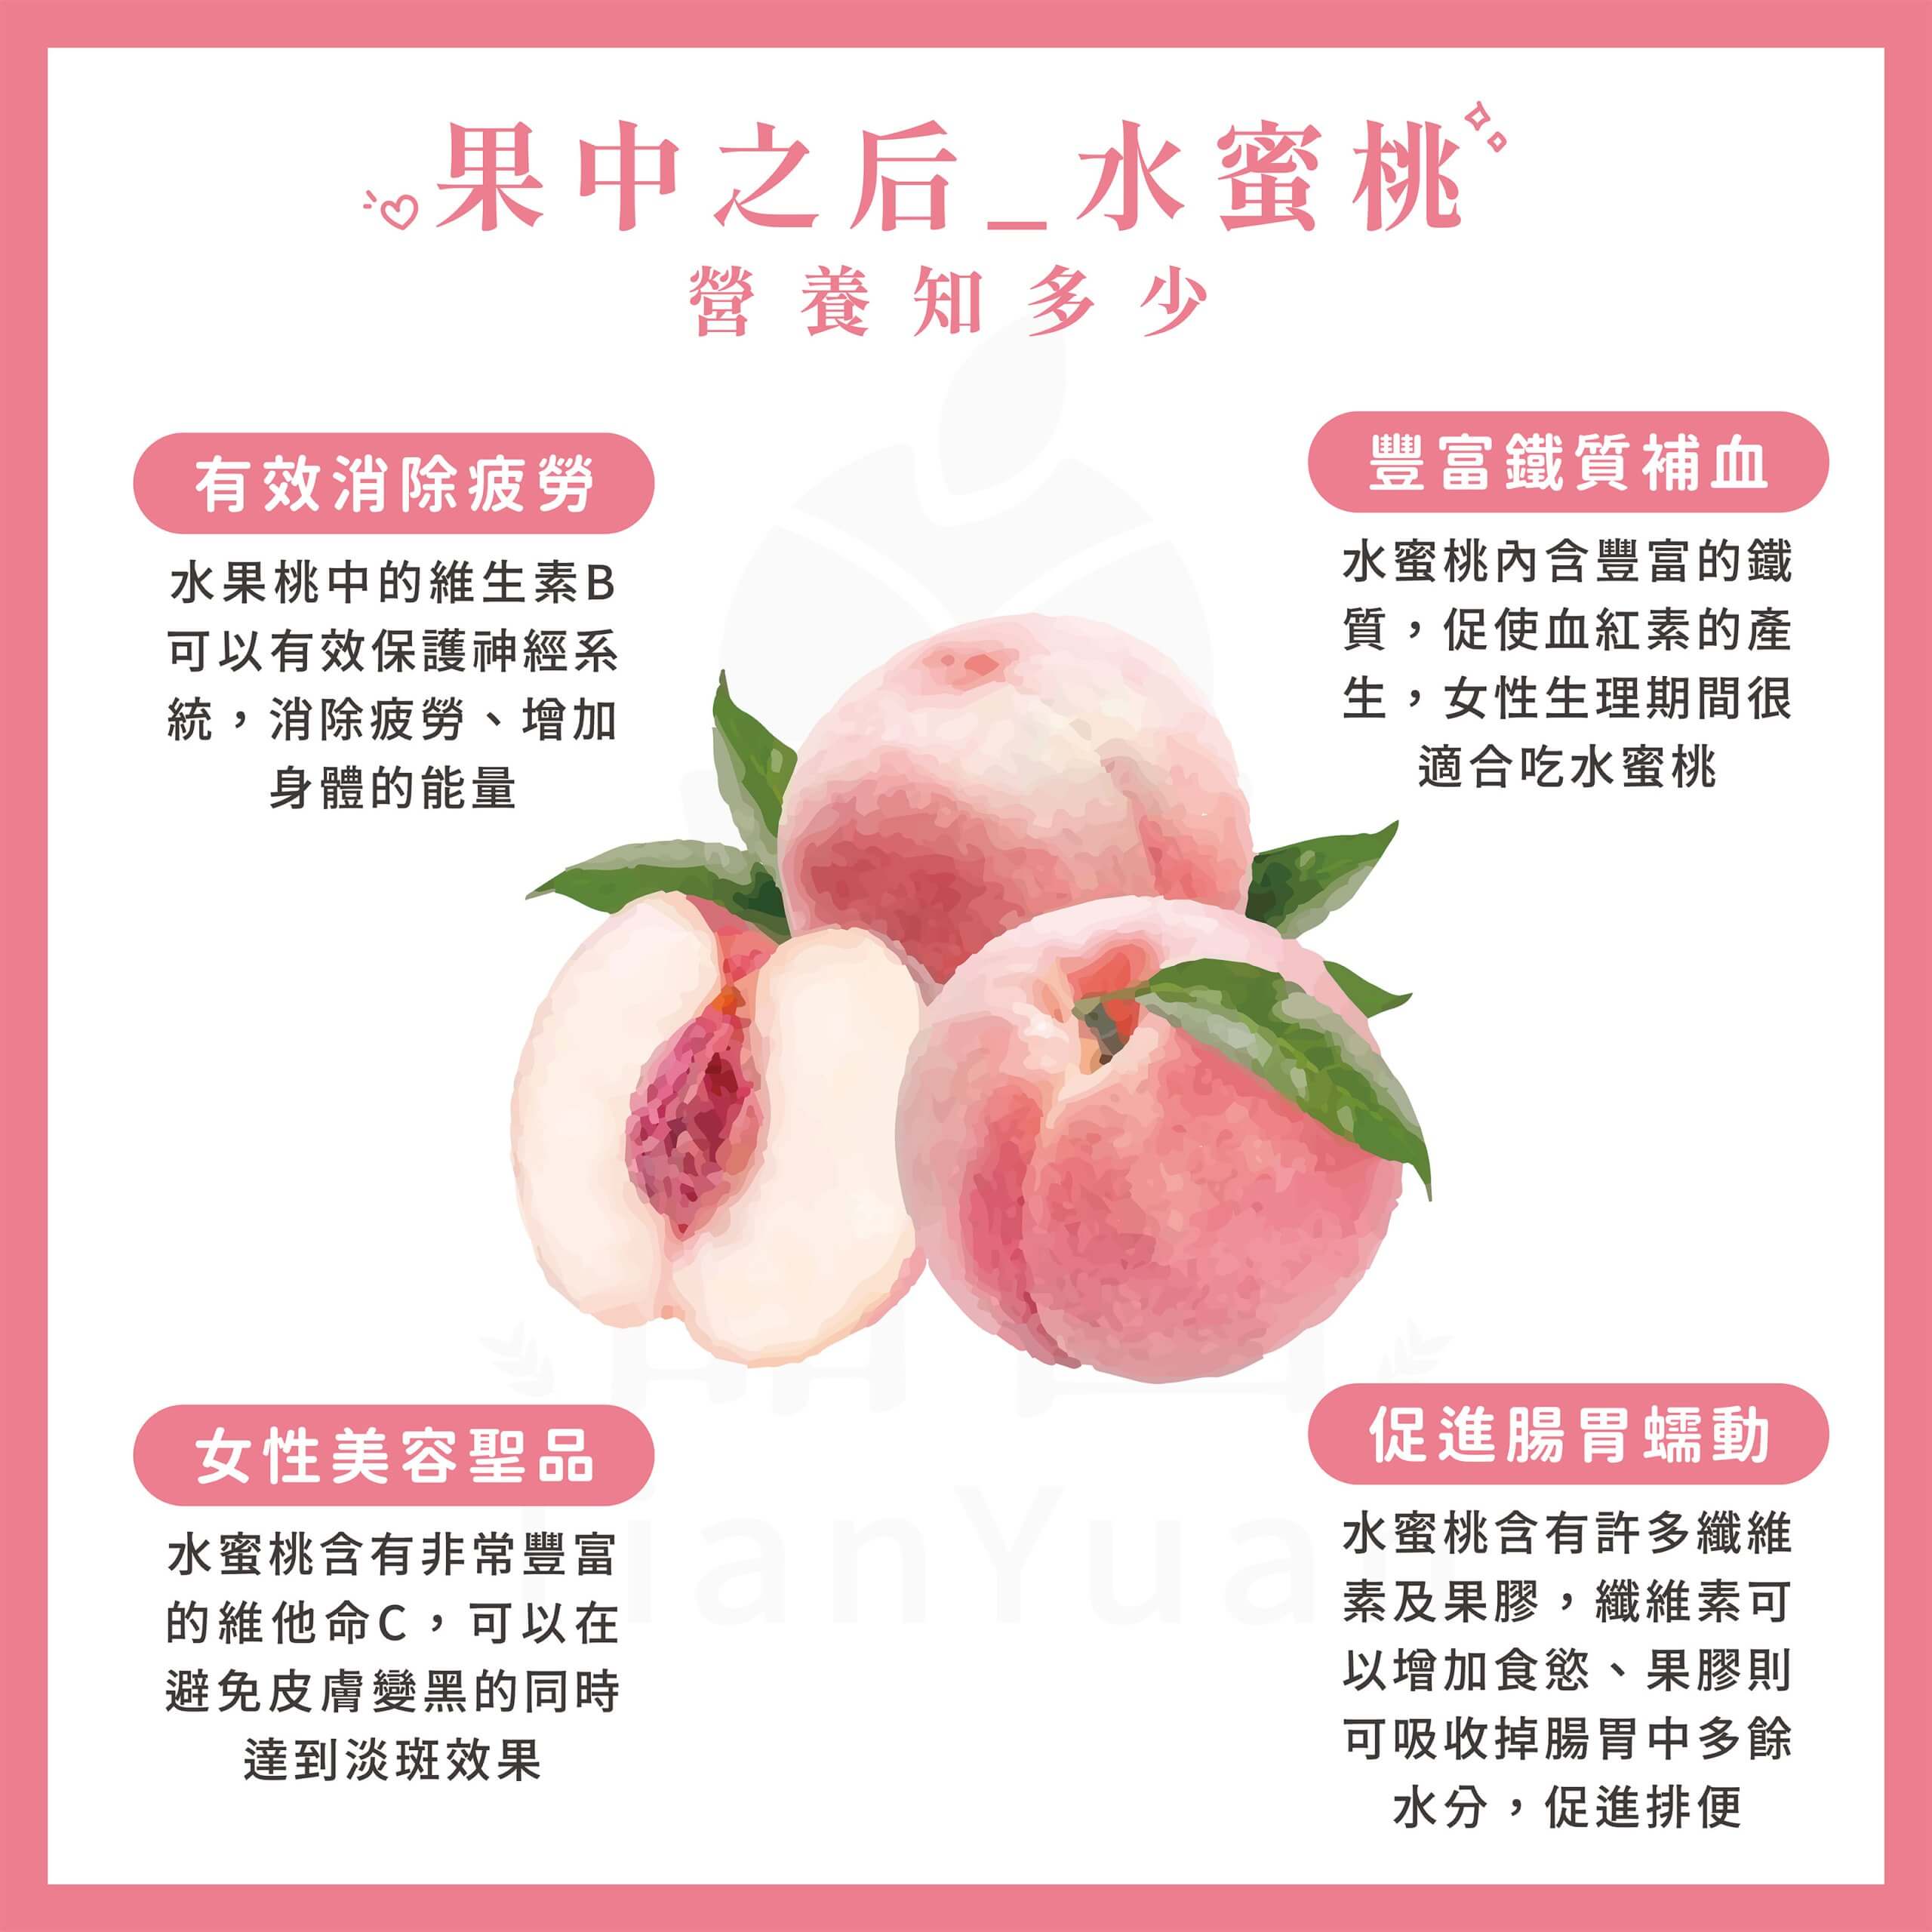 紅玉水蜜桃禮盒-營養價值